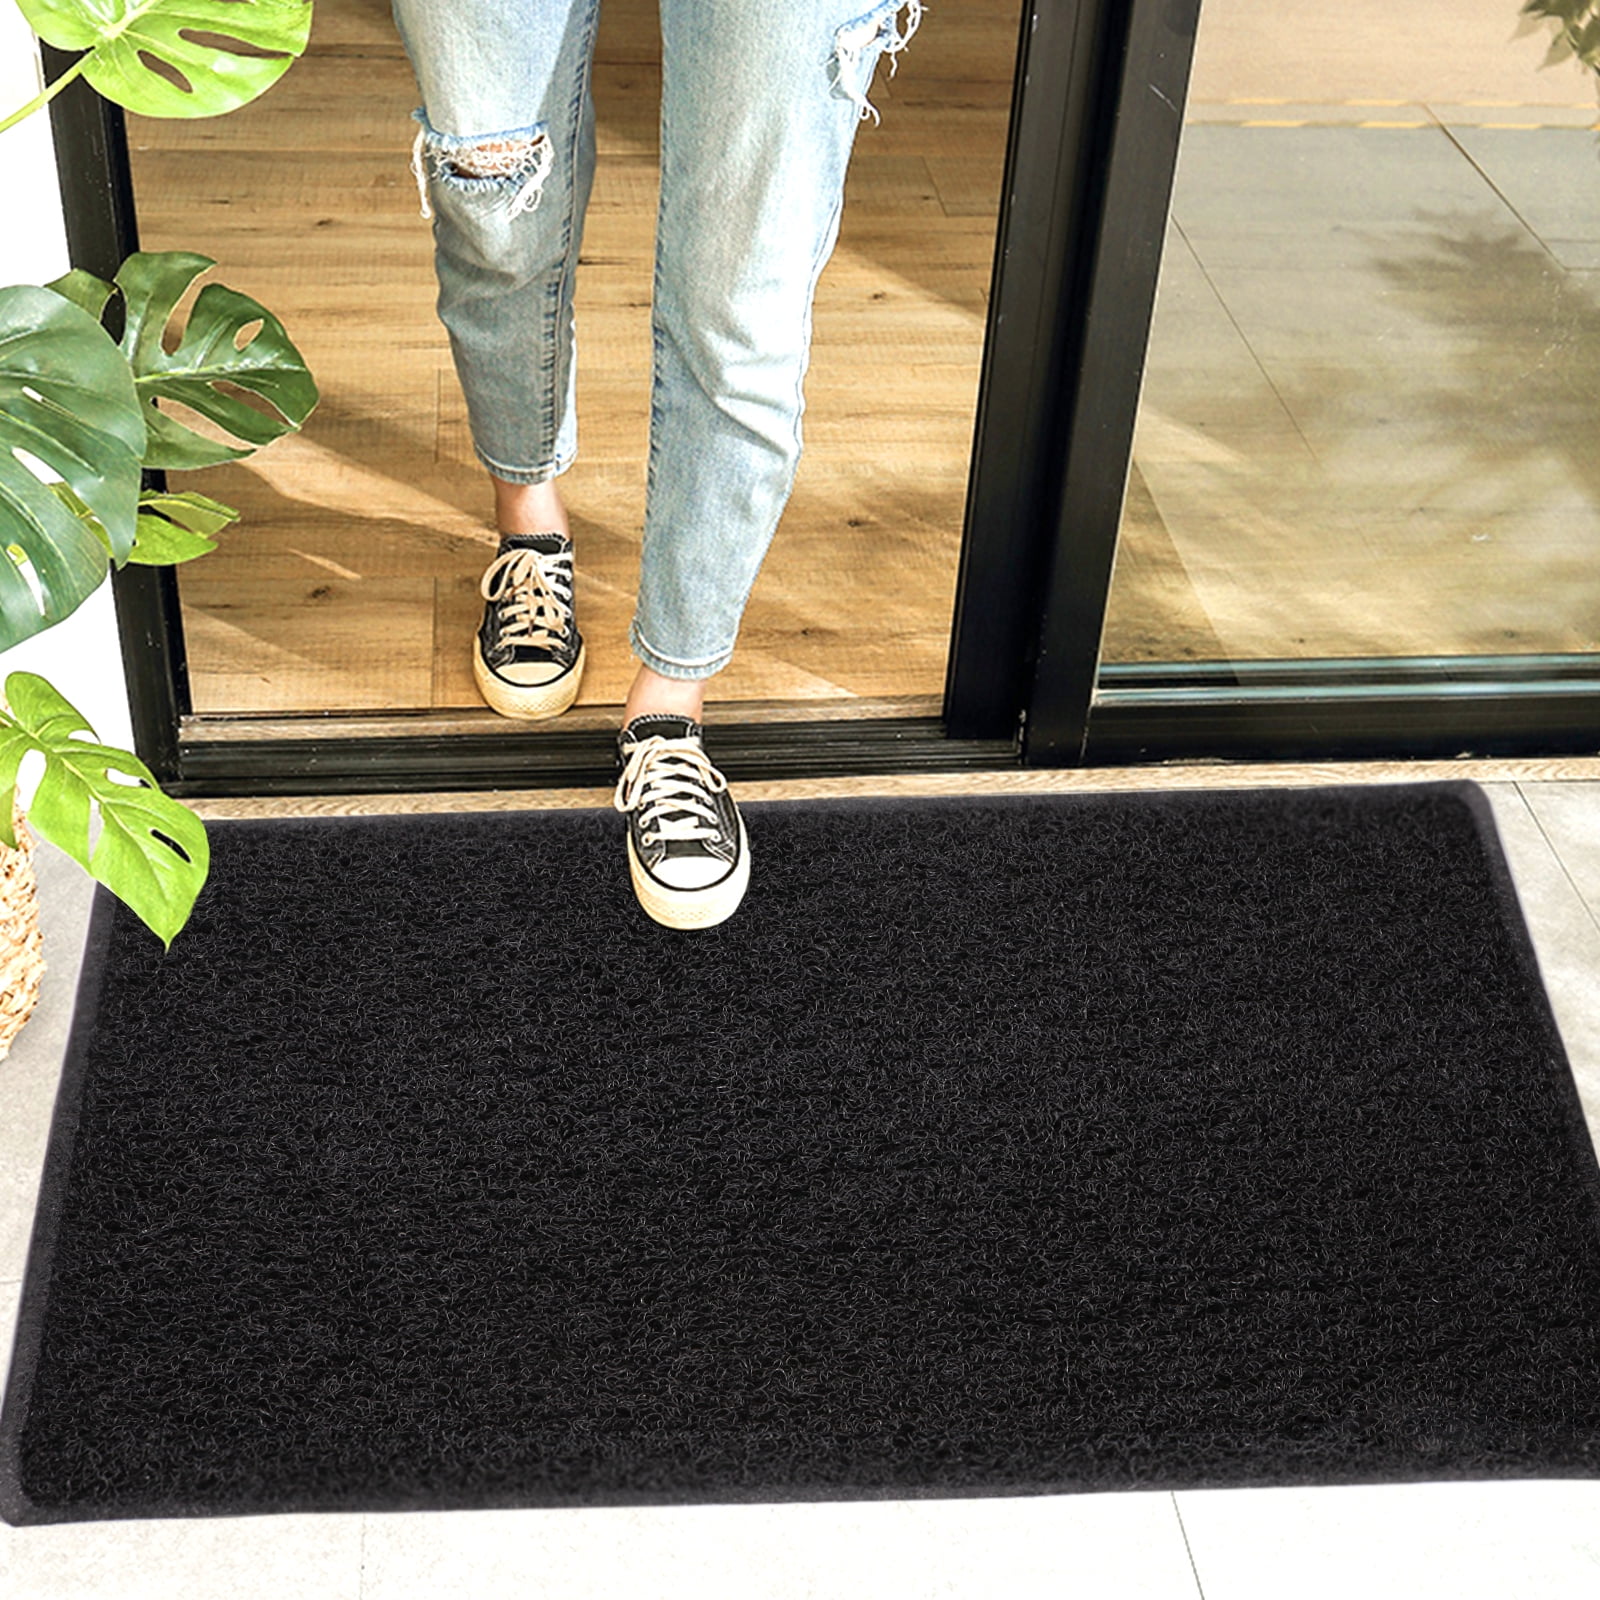 N/Ａ doormats inside Flannel Carpet Washable Door Mat Funny Words Take Off Your Shoes Doormat for Front Door Hallway Entry Rubber Carpet Rug-24x36 inch